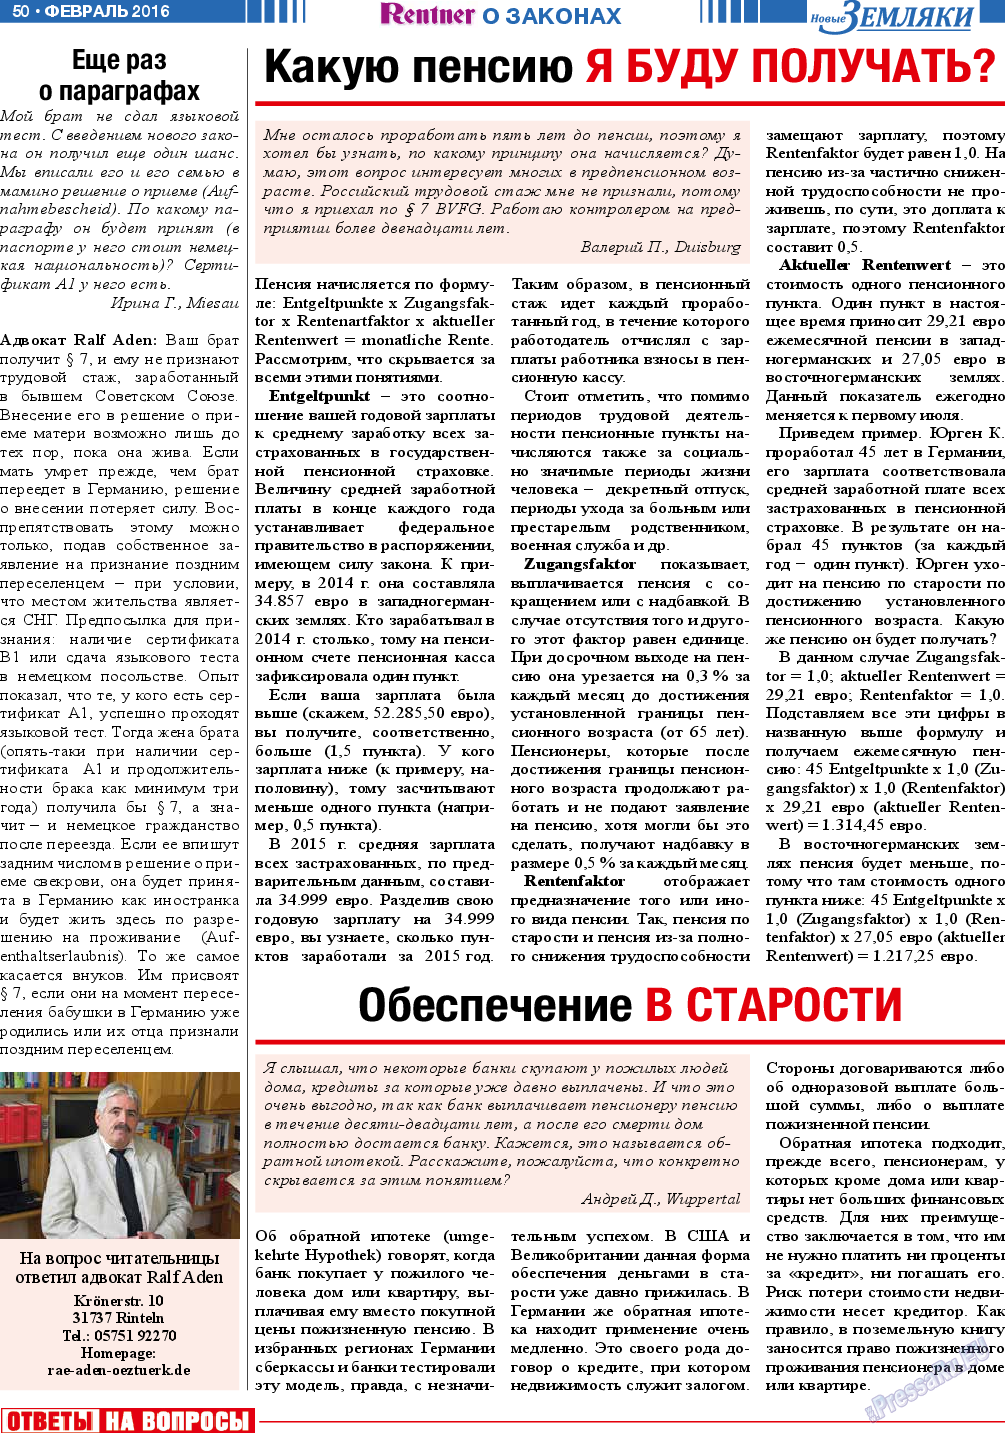 Новые Земляки, газета. 2016 №2 стр.50